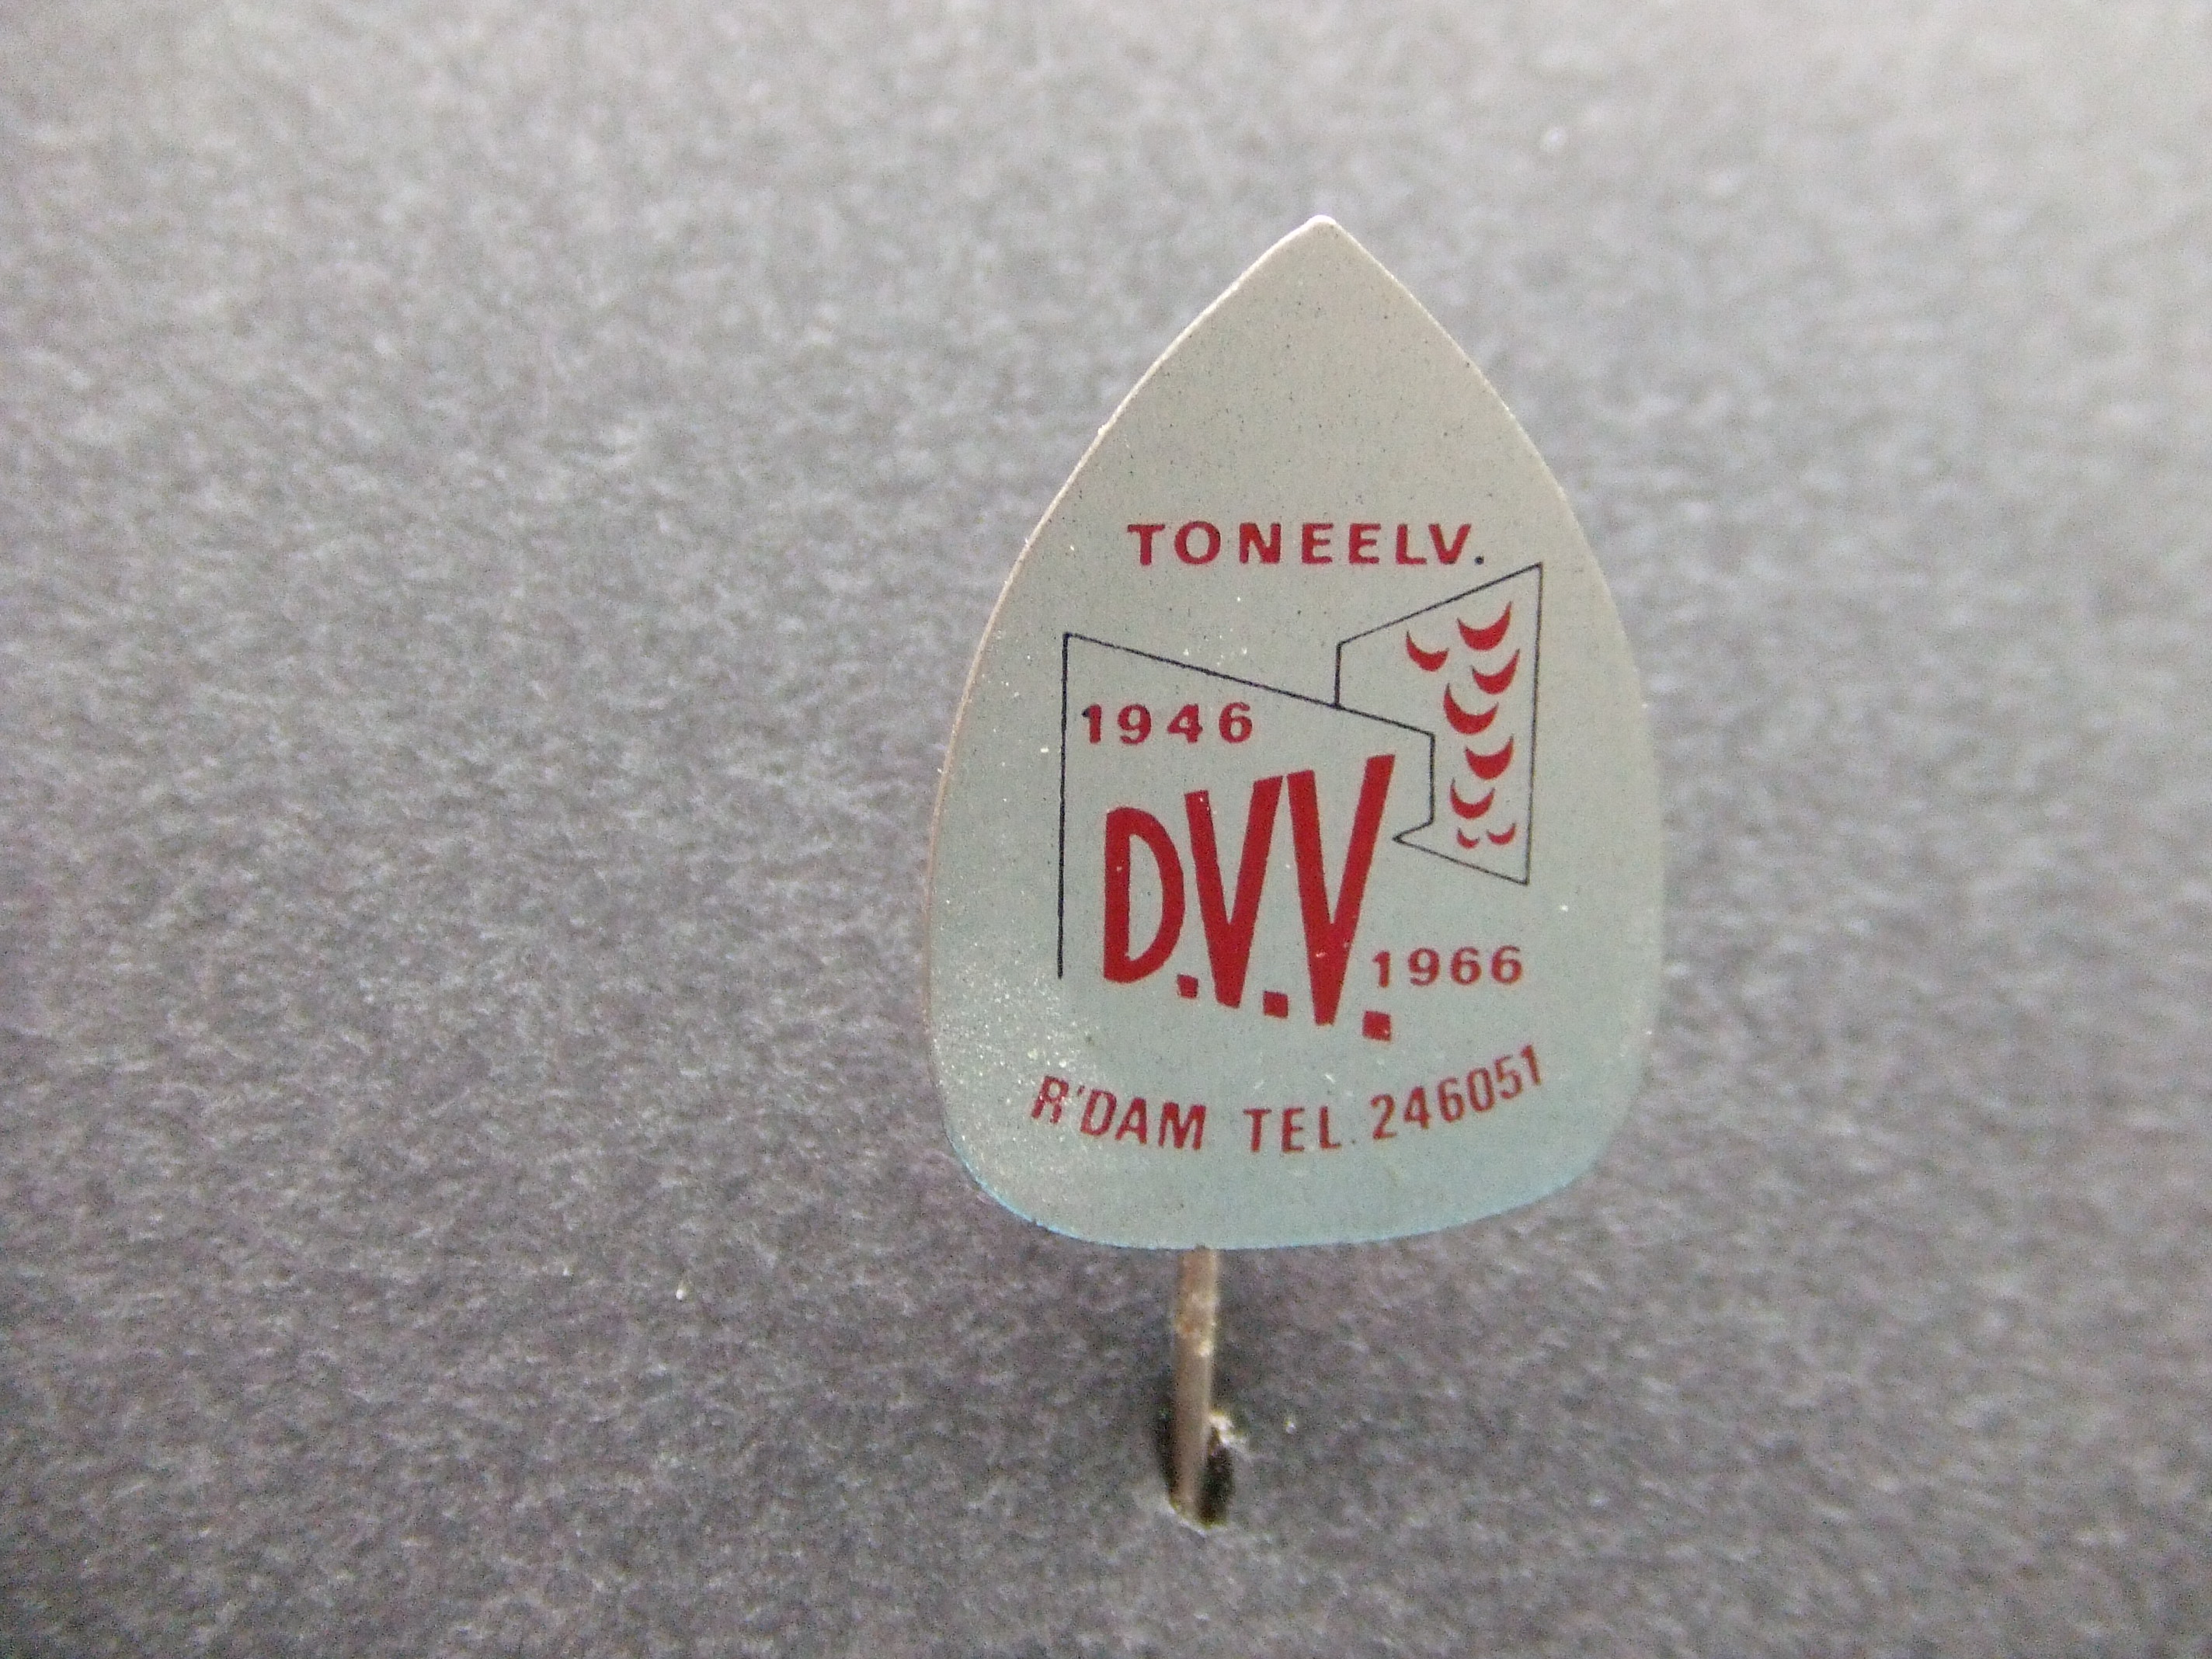 Toneelvereniging D.V.V. Rotterdam 1946-1966